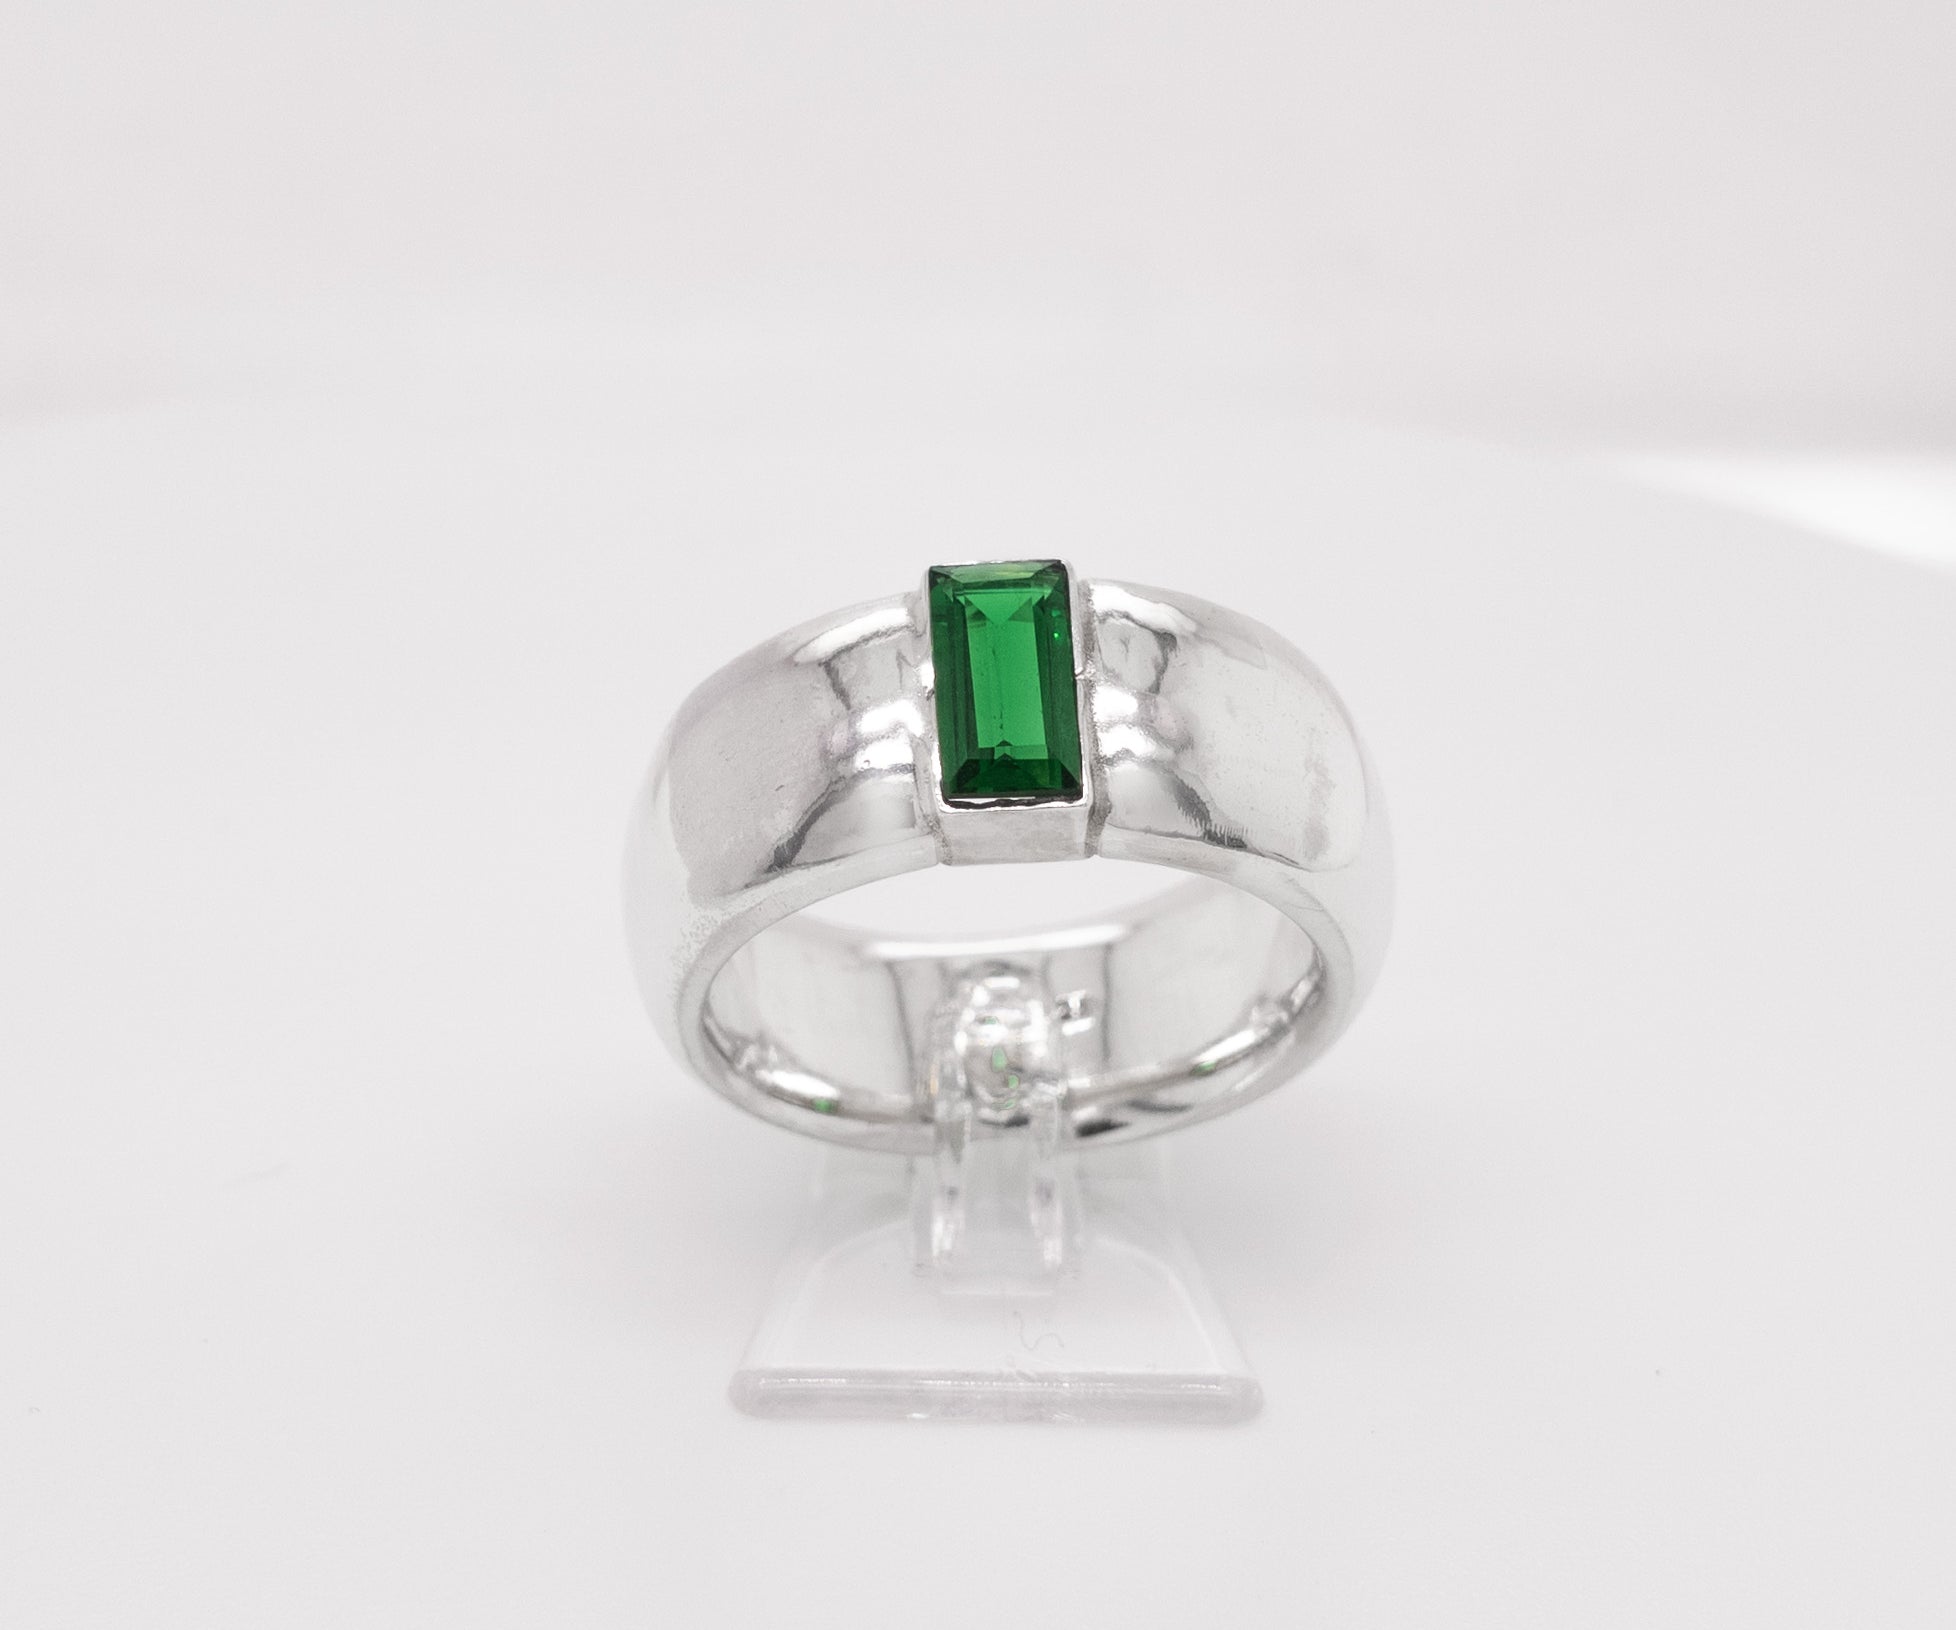 HEDDA – Ring mit grünem Zirkonia